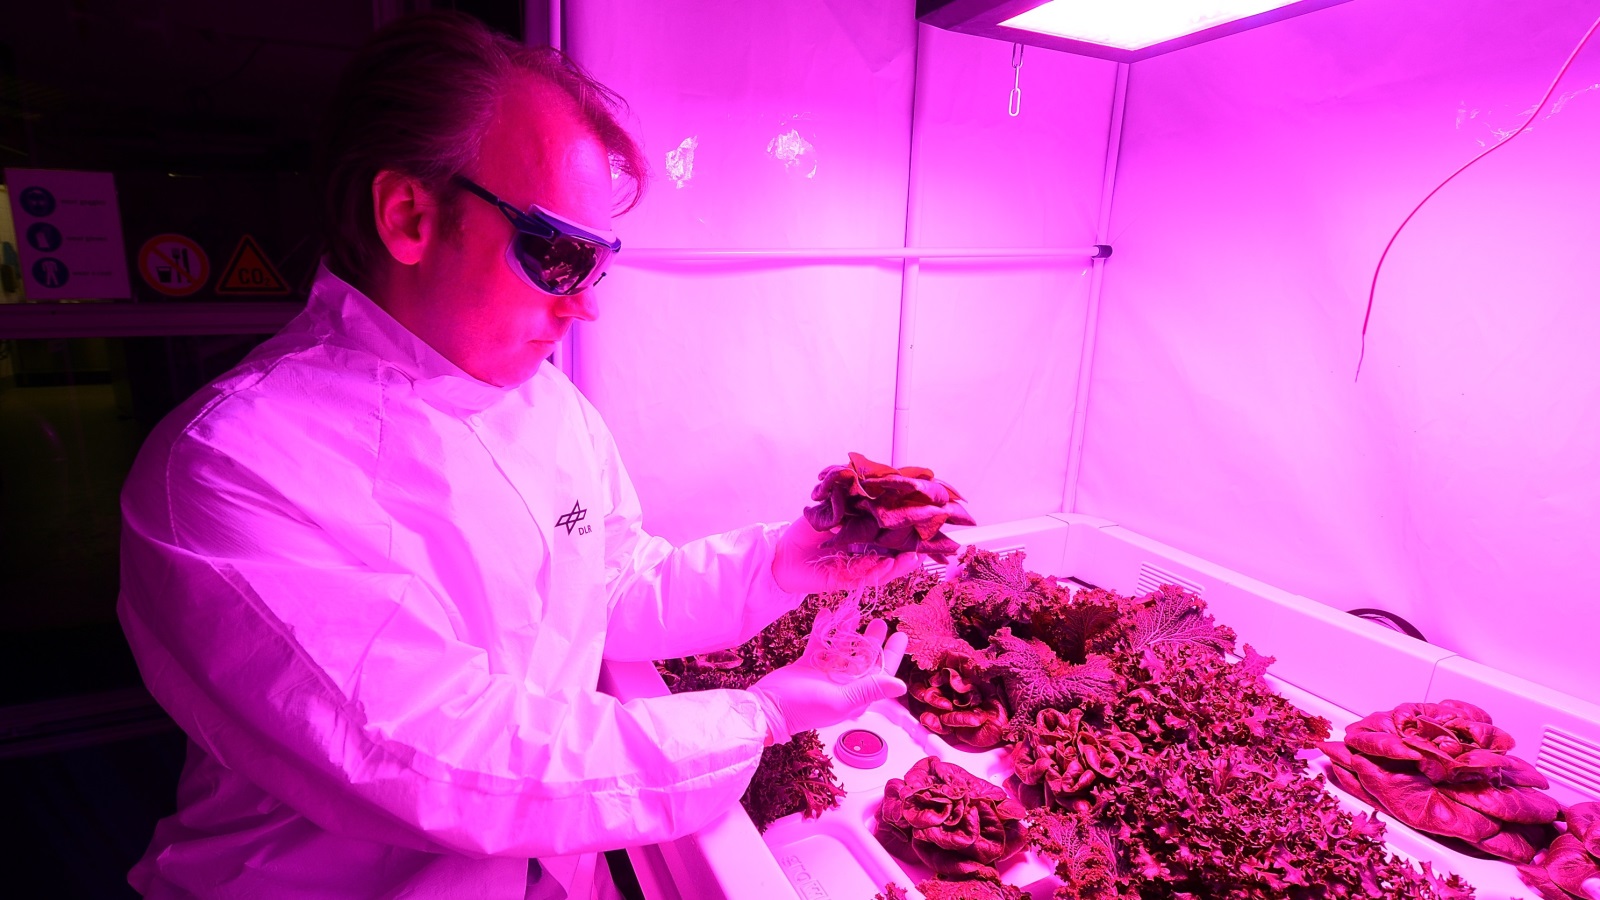 مركز الفضاء الألماني يجري تجارب على زراعة نباتات لاستكشاف إمكانية نجاح التجربة في مستعمرات مريخية محتملة (غيتي)